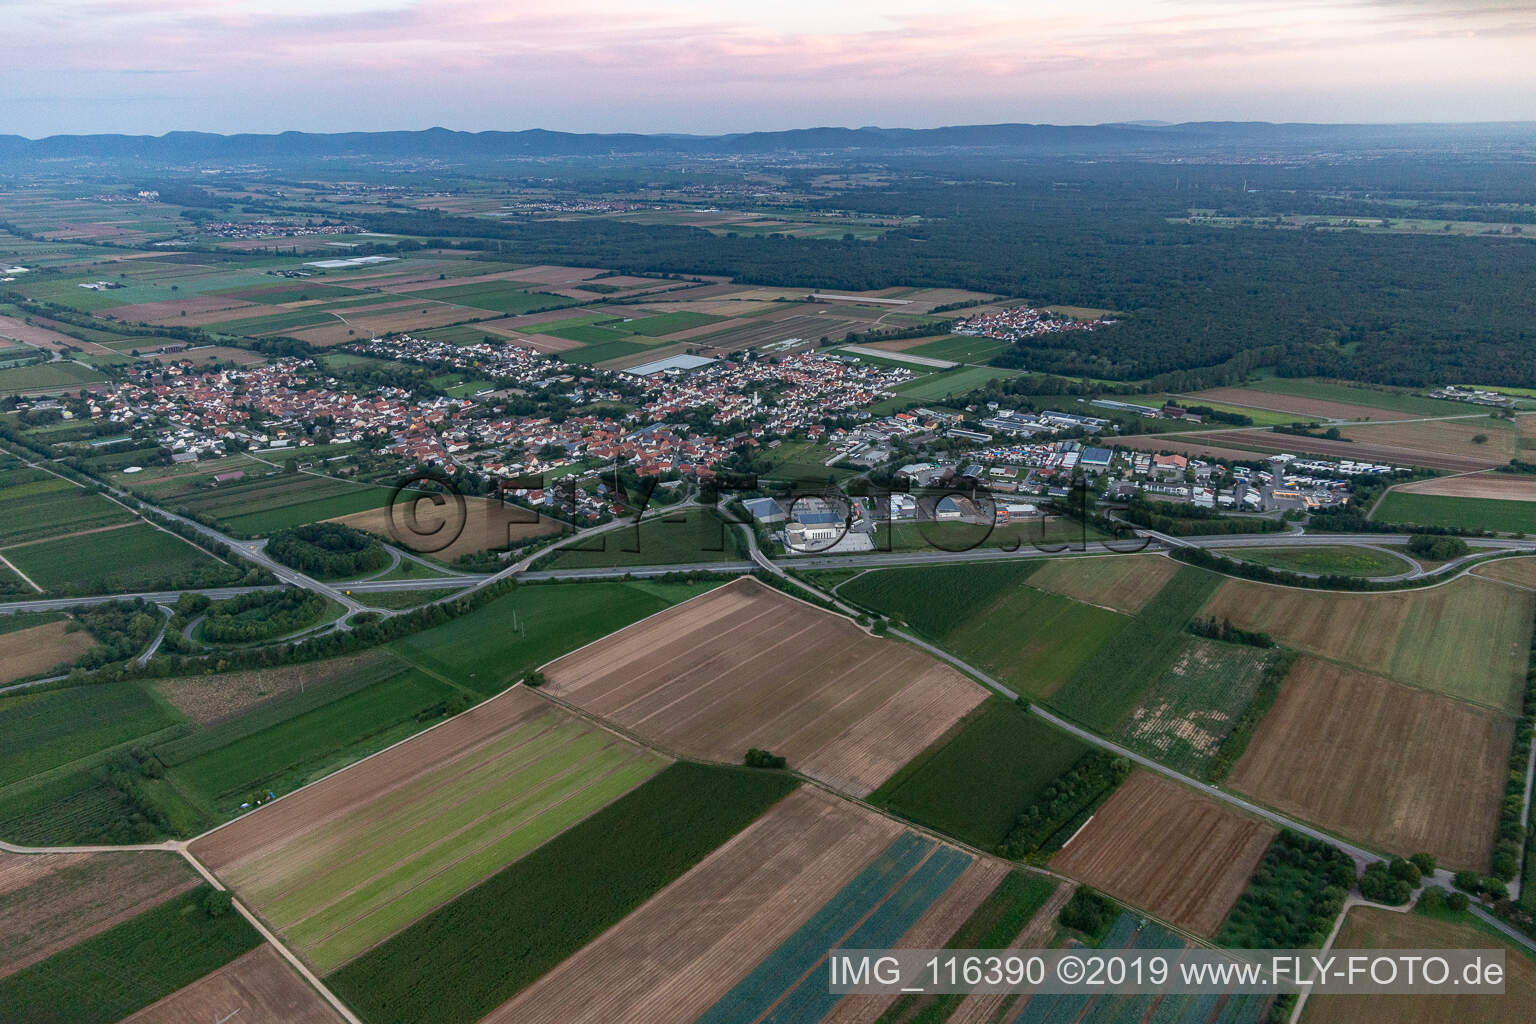 Schwegenheim im Bundesland Rheinland-Pfalz, Deutschland aus der Luft betrachtet